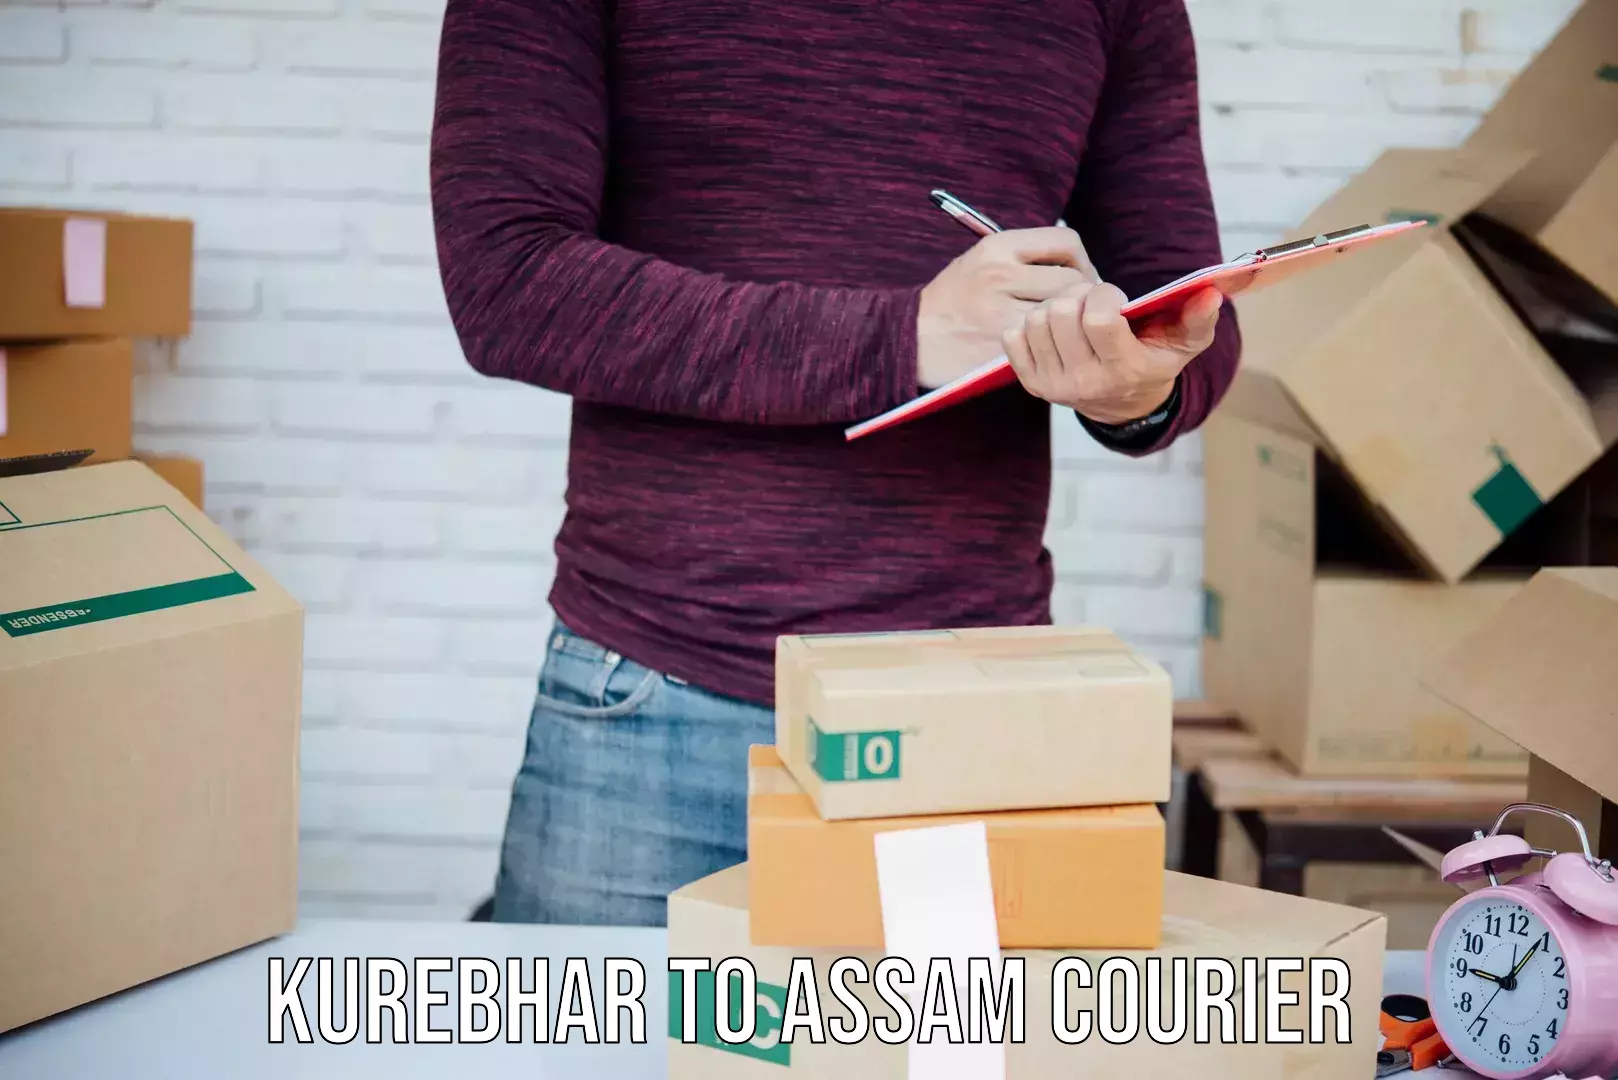 Expedited parcel delivery Kurebhar to Assam